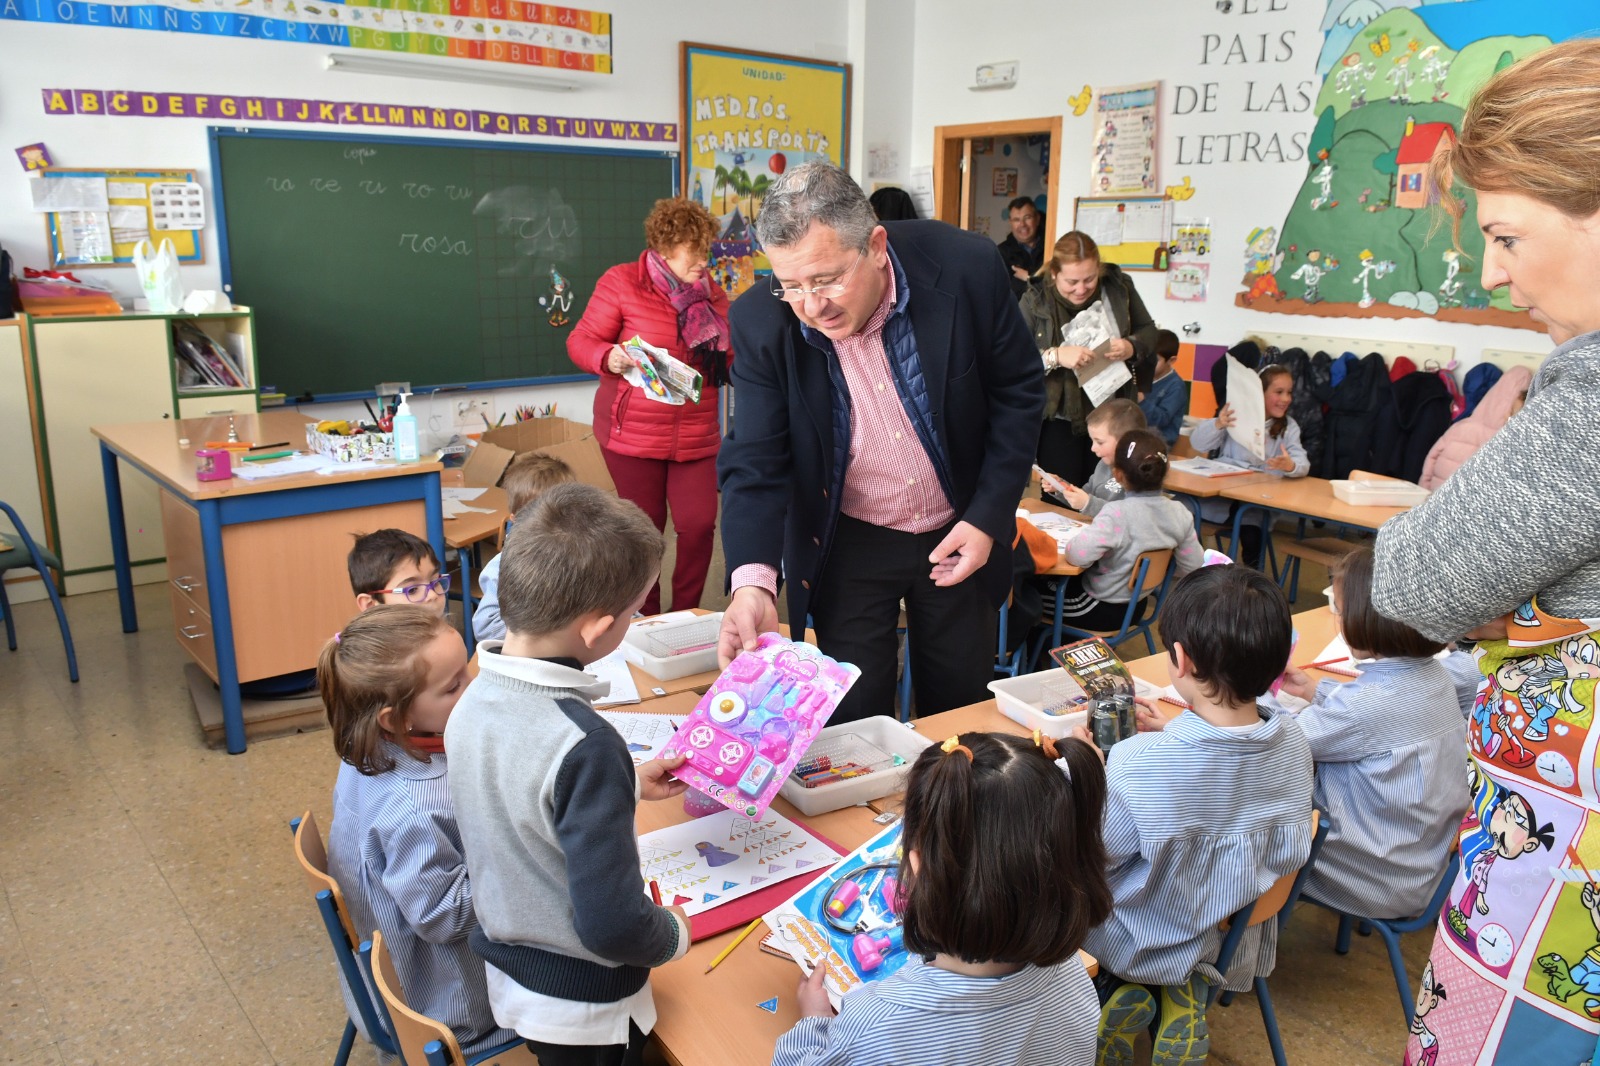 Más de 600 niños y niñas de Infantil de Pozoblanco reciben un regalo por participar en el concurso “Me gusta mi cole limpio” 1